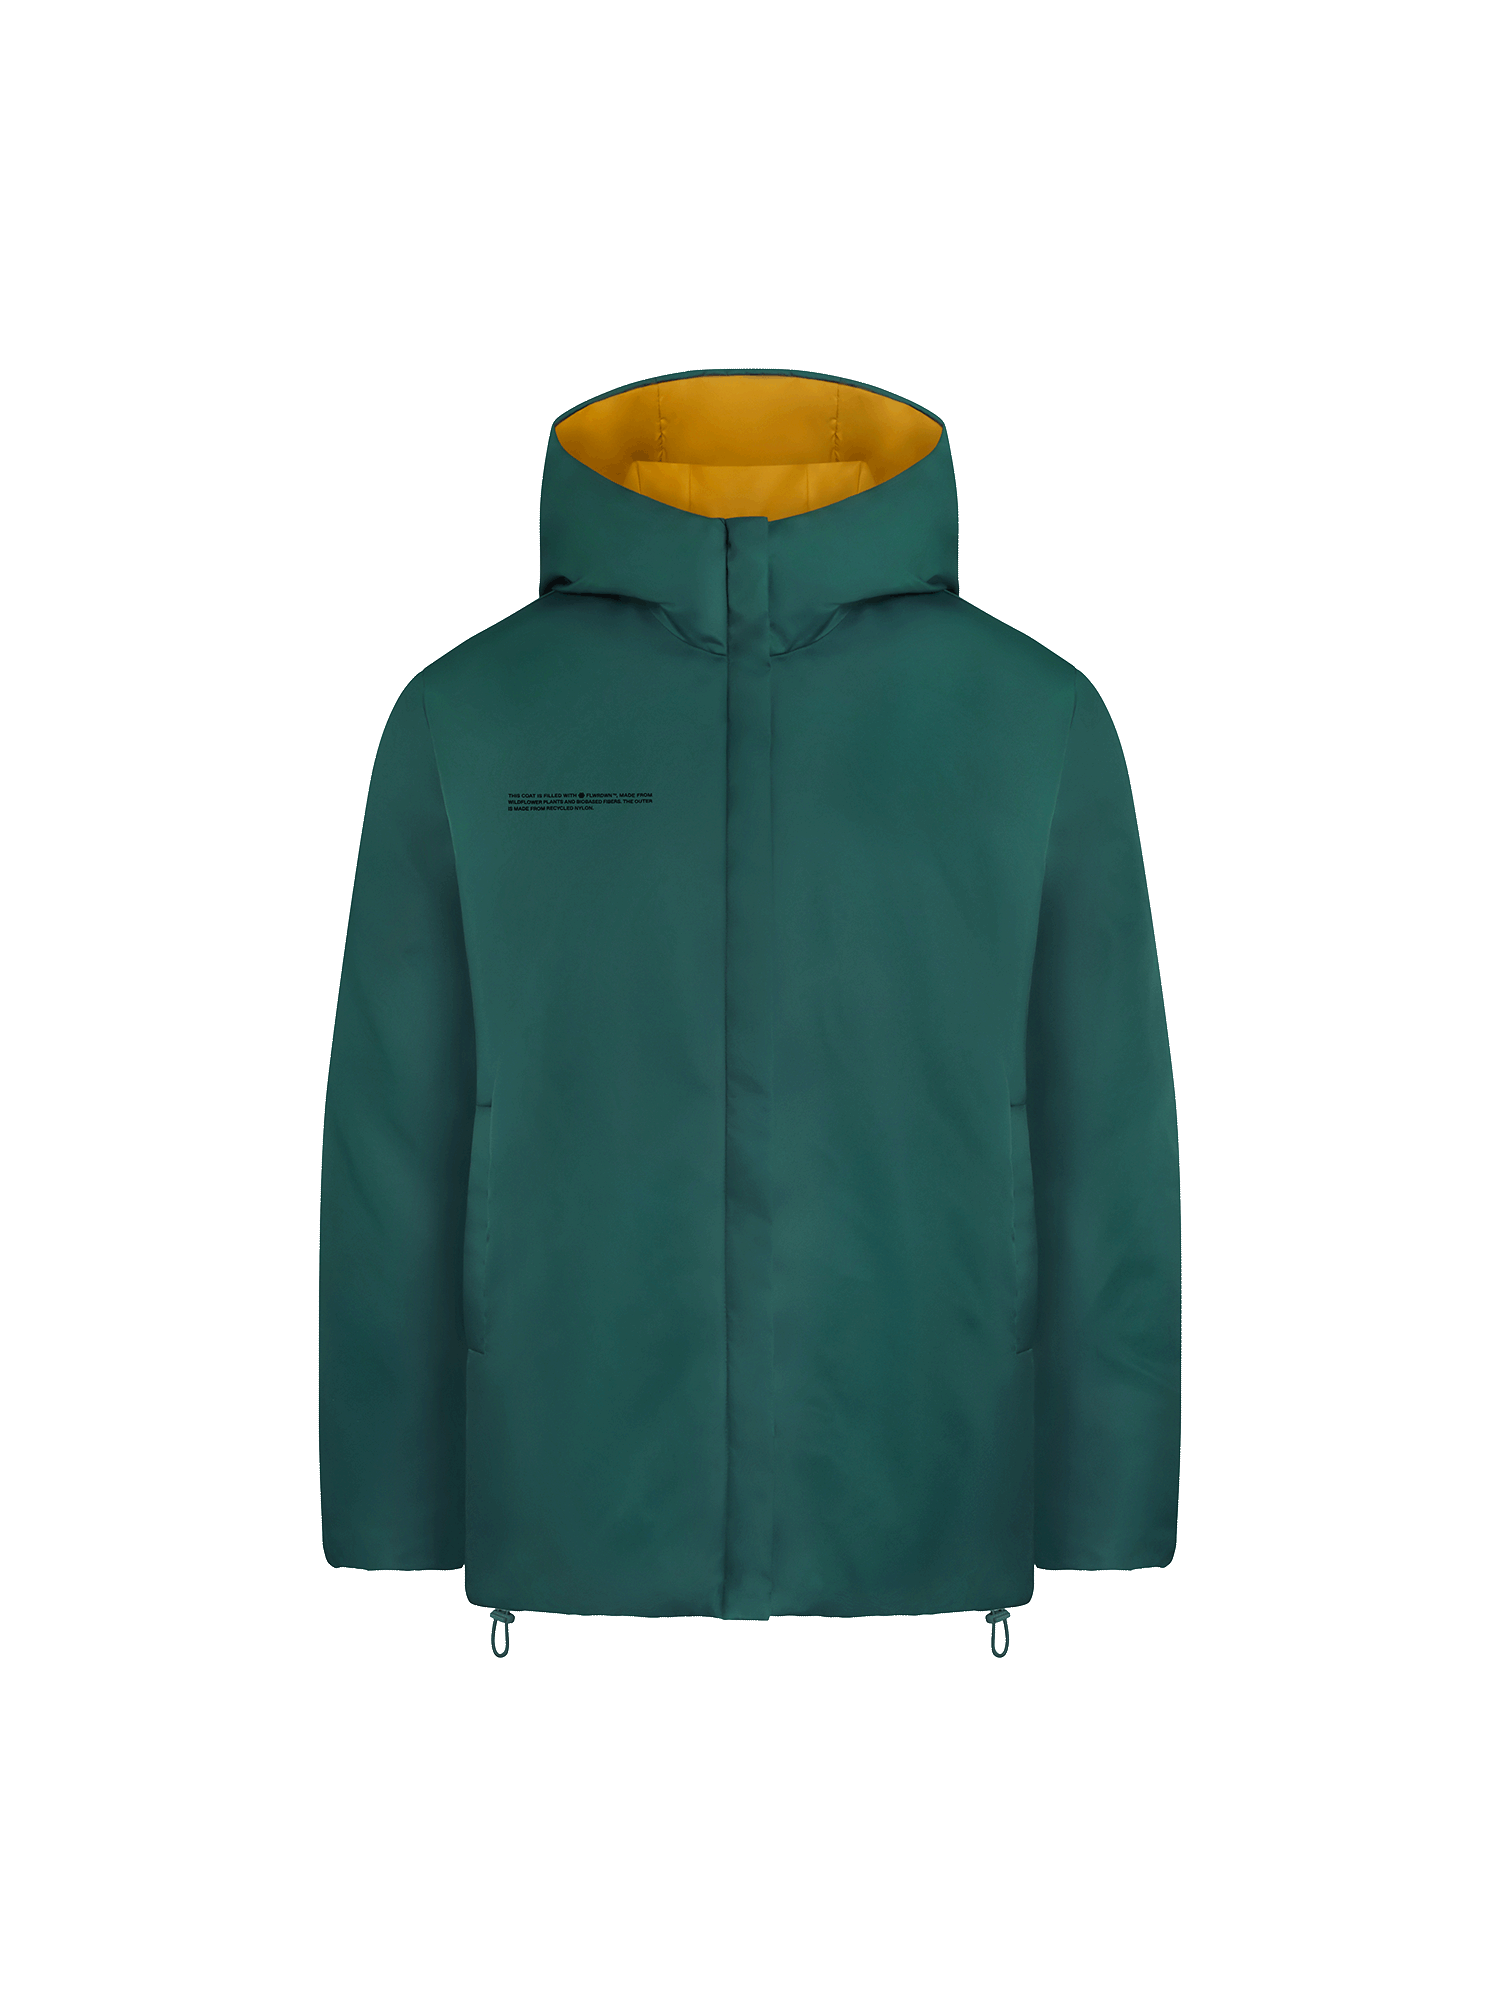 PANGAIA - FLWRDWN Reversible Jacket - Foliage Green / Copper Brown L